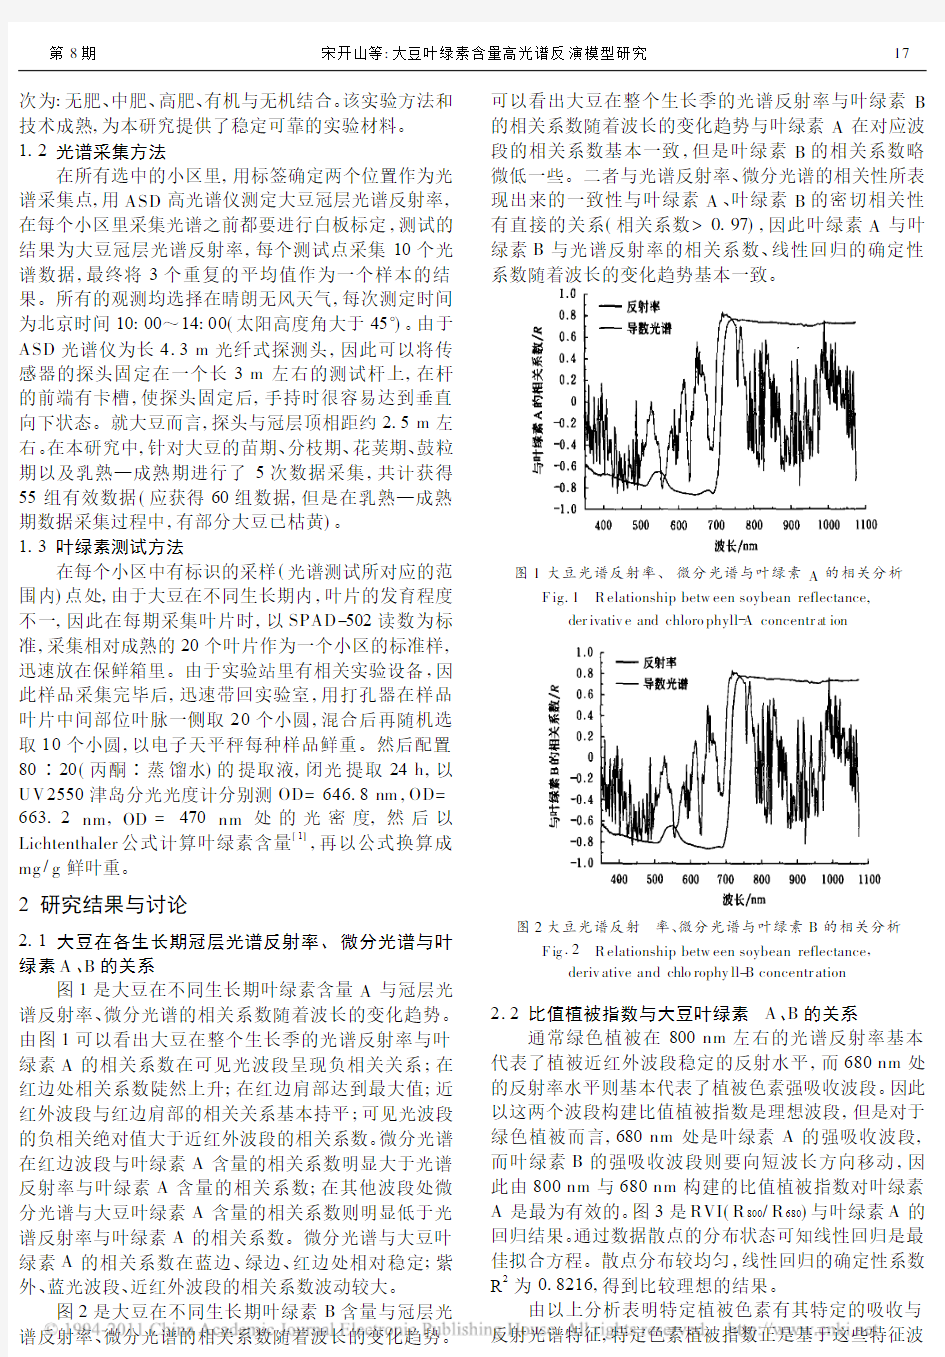 大豆叶绿素含量高光谱反演模型研究_宋开山